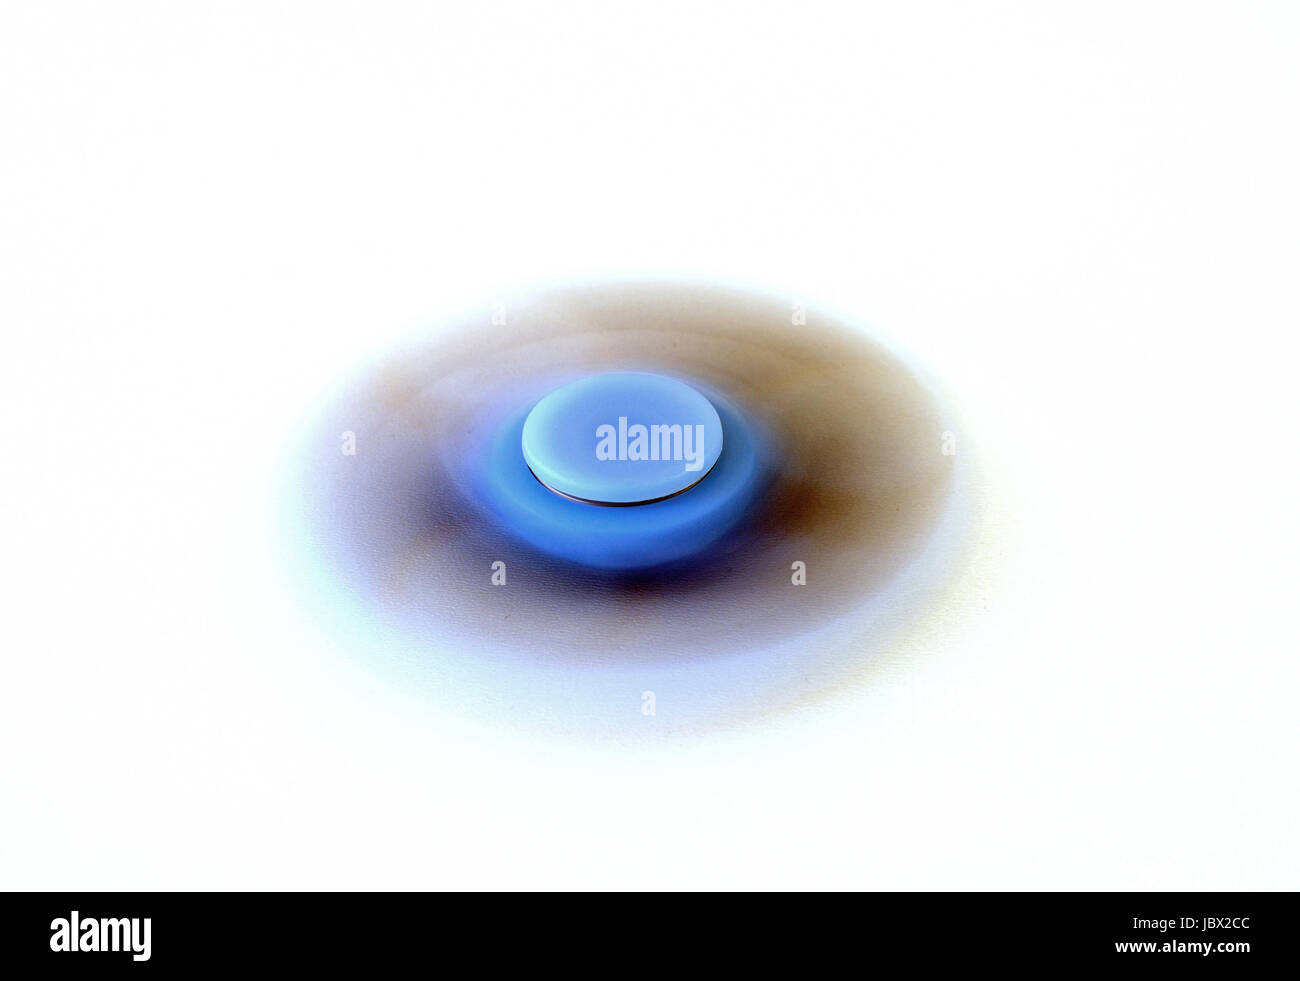 Blue fidget spinner spinning on white background Stock Photo